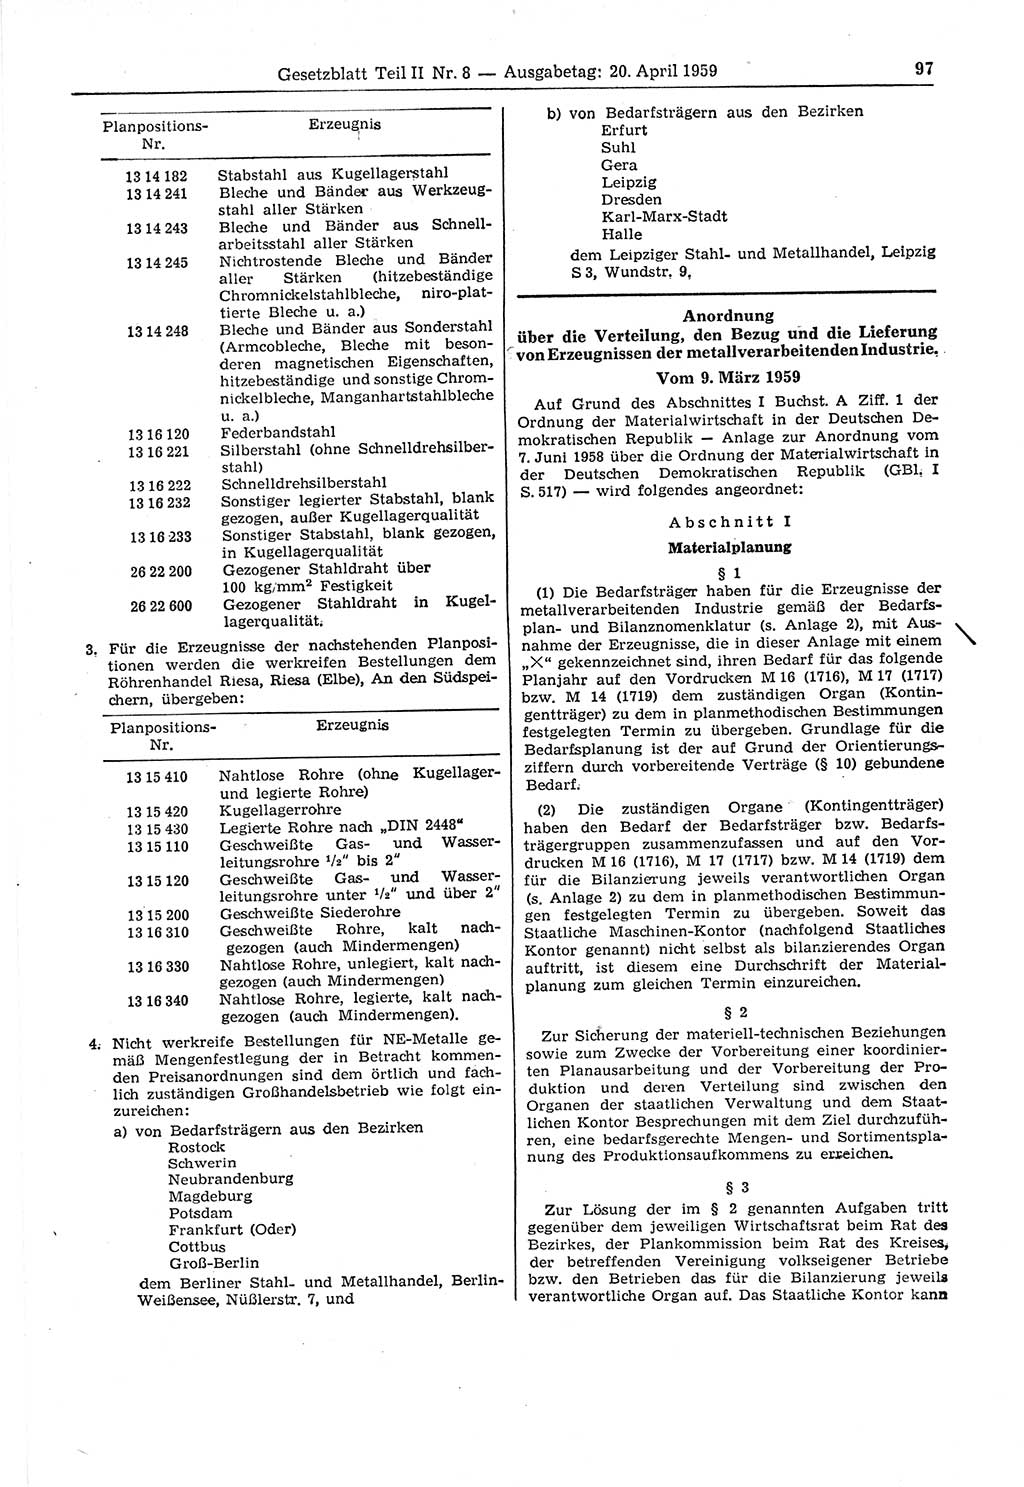 Gesetzblatt (GBl.) der Deutschen Demokratischen Republik (DDR) Teil ⅠⅠ 1959, Seite 97 (GBl. DDR ⅠⅠ 1959, S. 97)